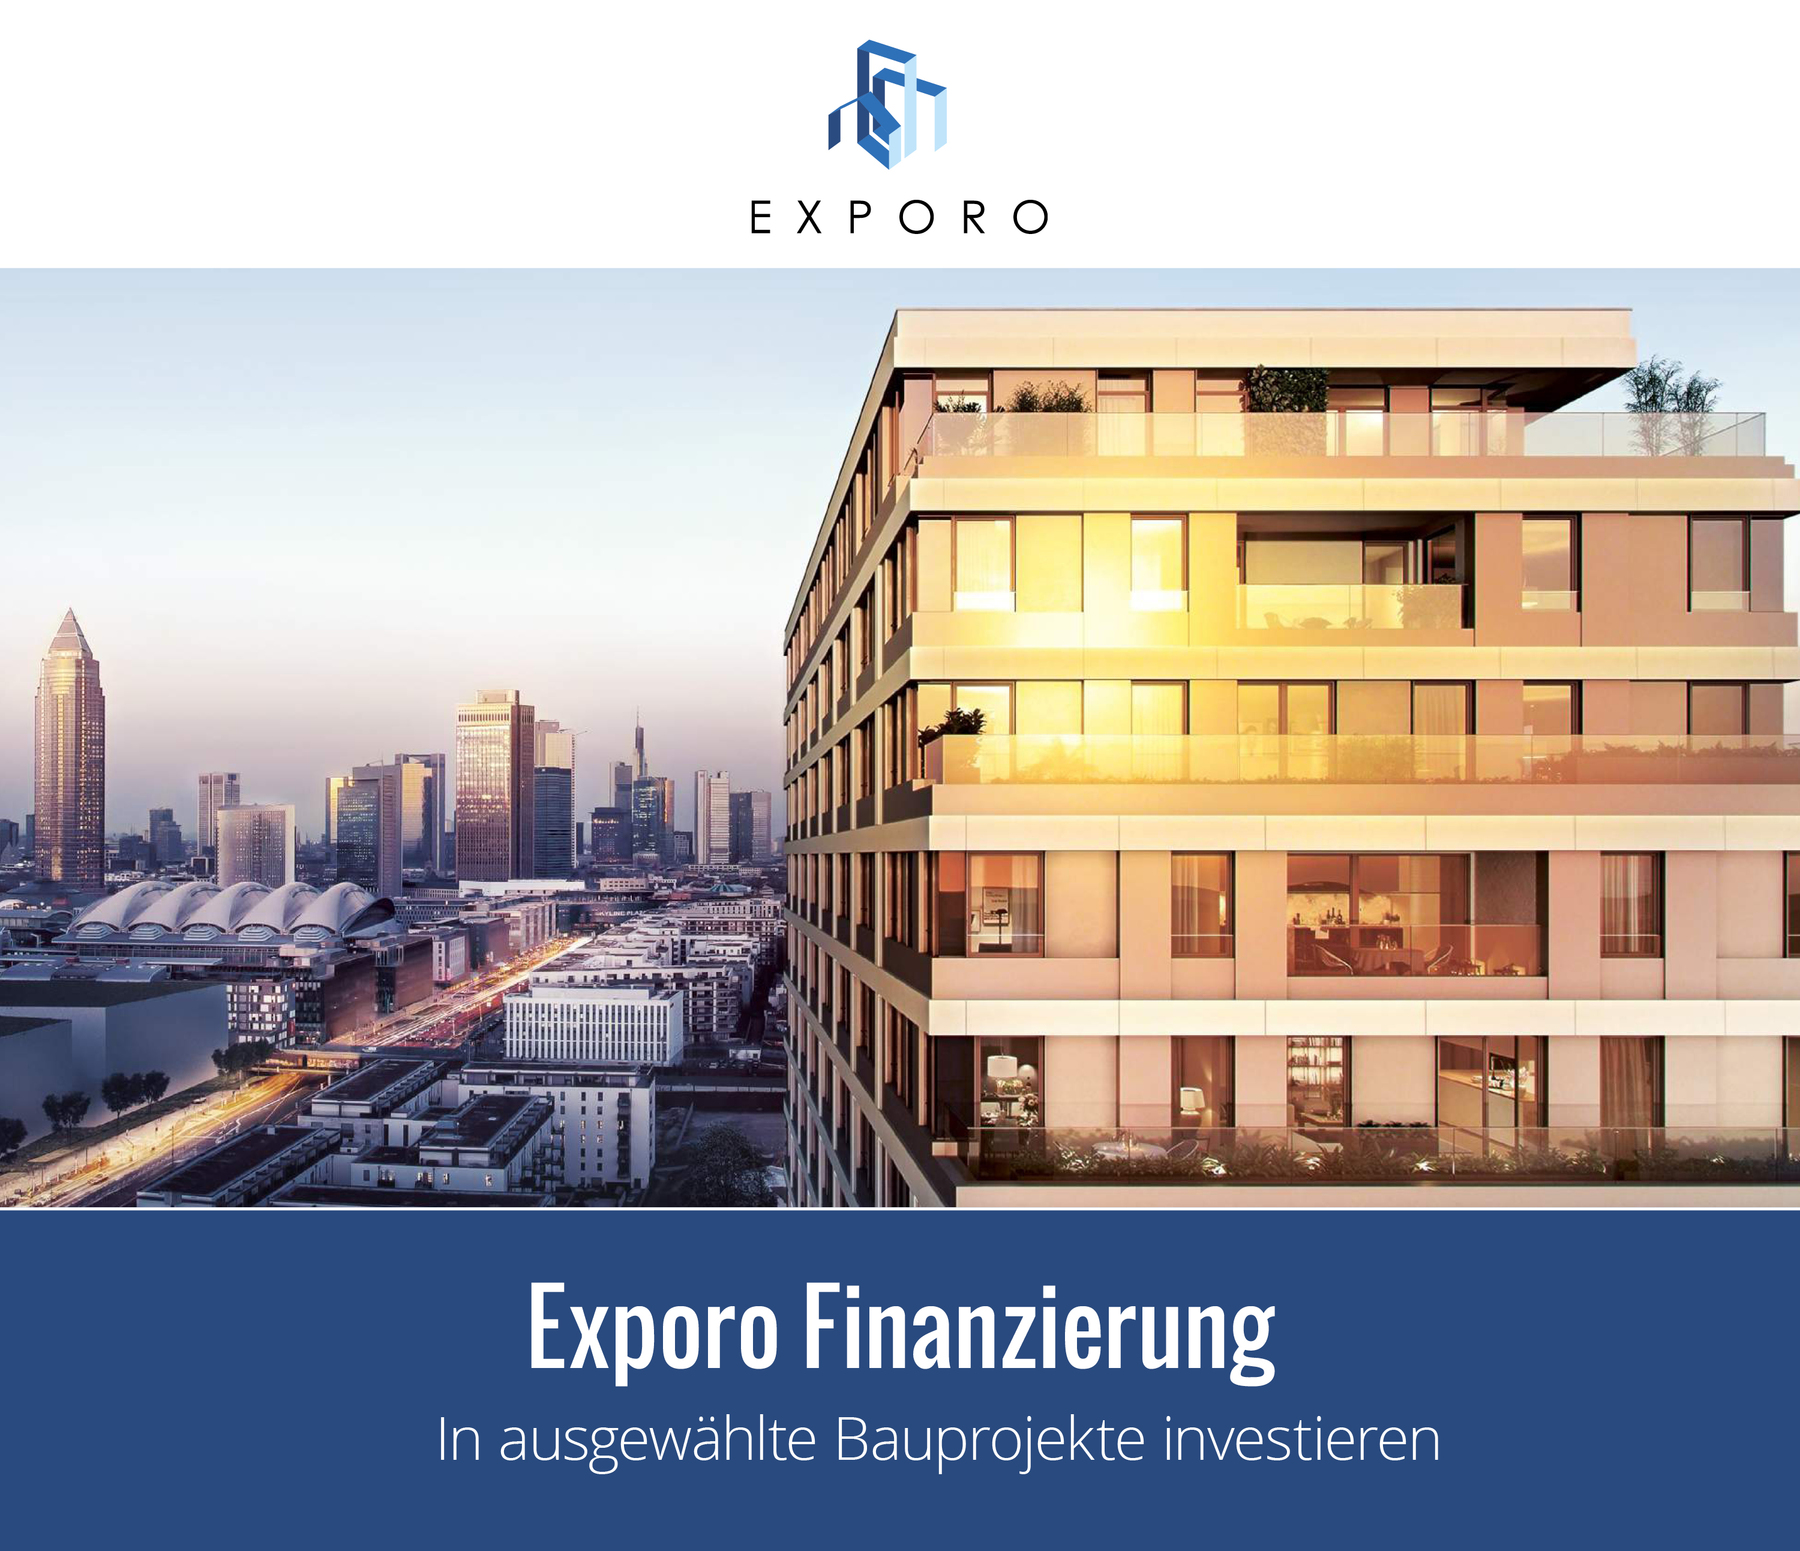 Exporo Finanzierung – investieren Sie in ausgewählte Bauprojekte